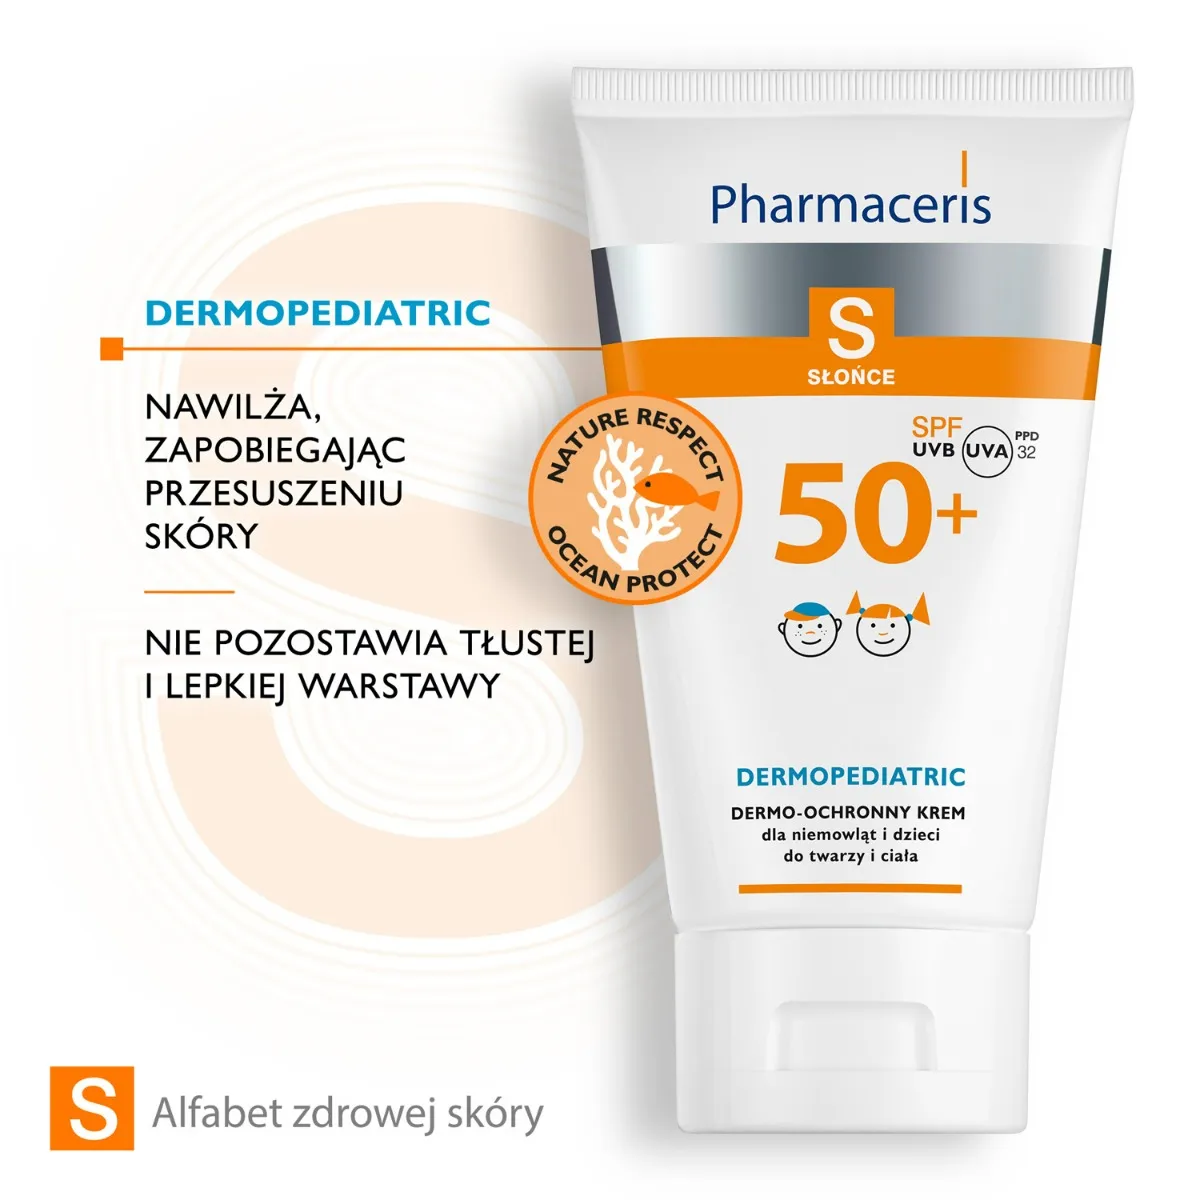 Pharmaceris S, krem ochronny na słońce do twarzy i ciała, dla niemowląt i dzieci, SPF 50+,125 ml 